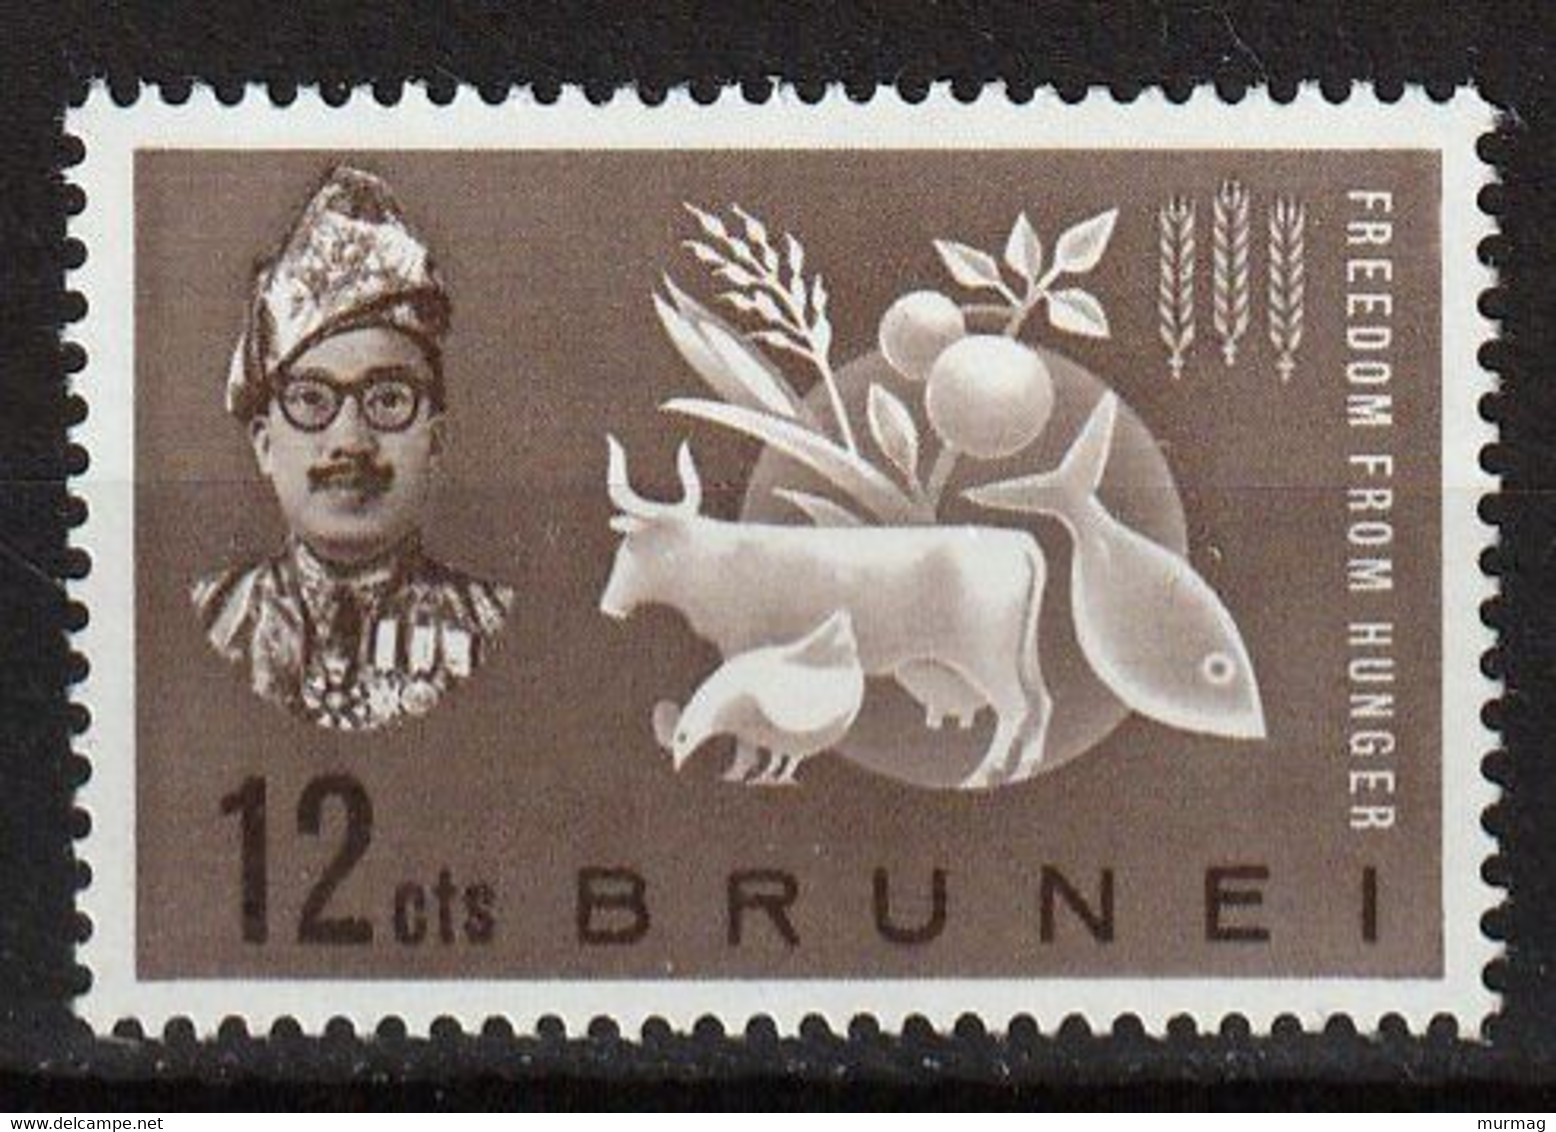 CAMPAGNE MONDIALE CONTRE LA FAIM - Brunei - Y&T N° 100 - 1963 - MNH - Contre La Faim